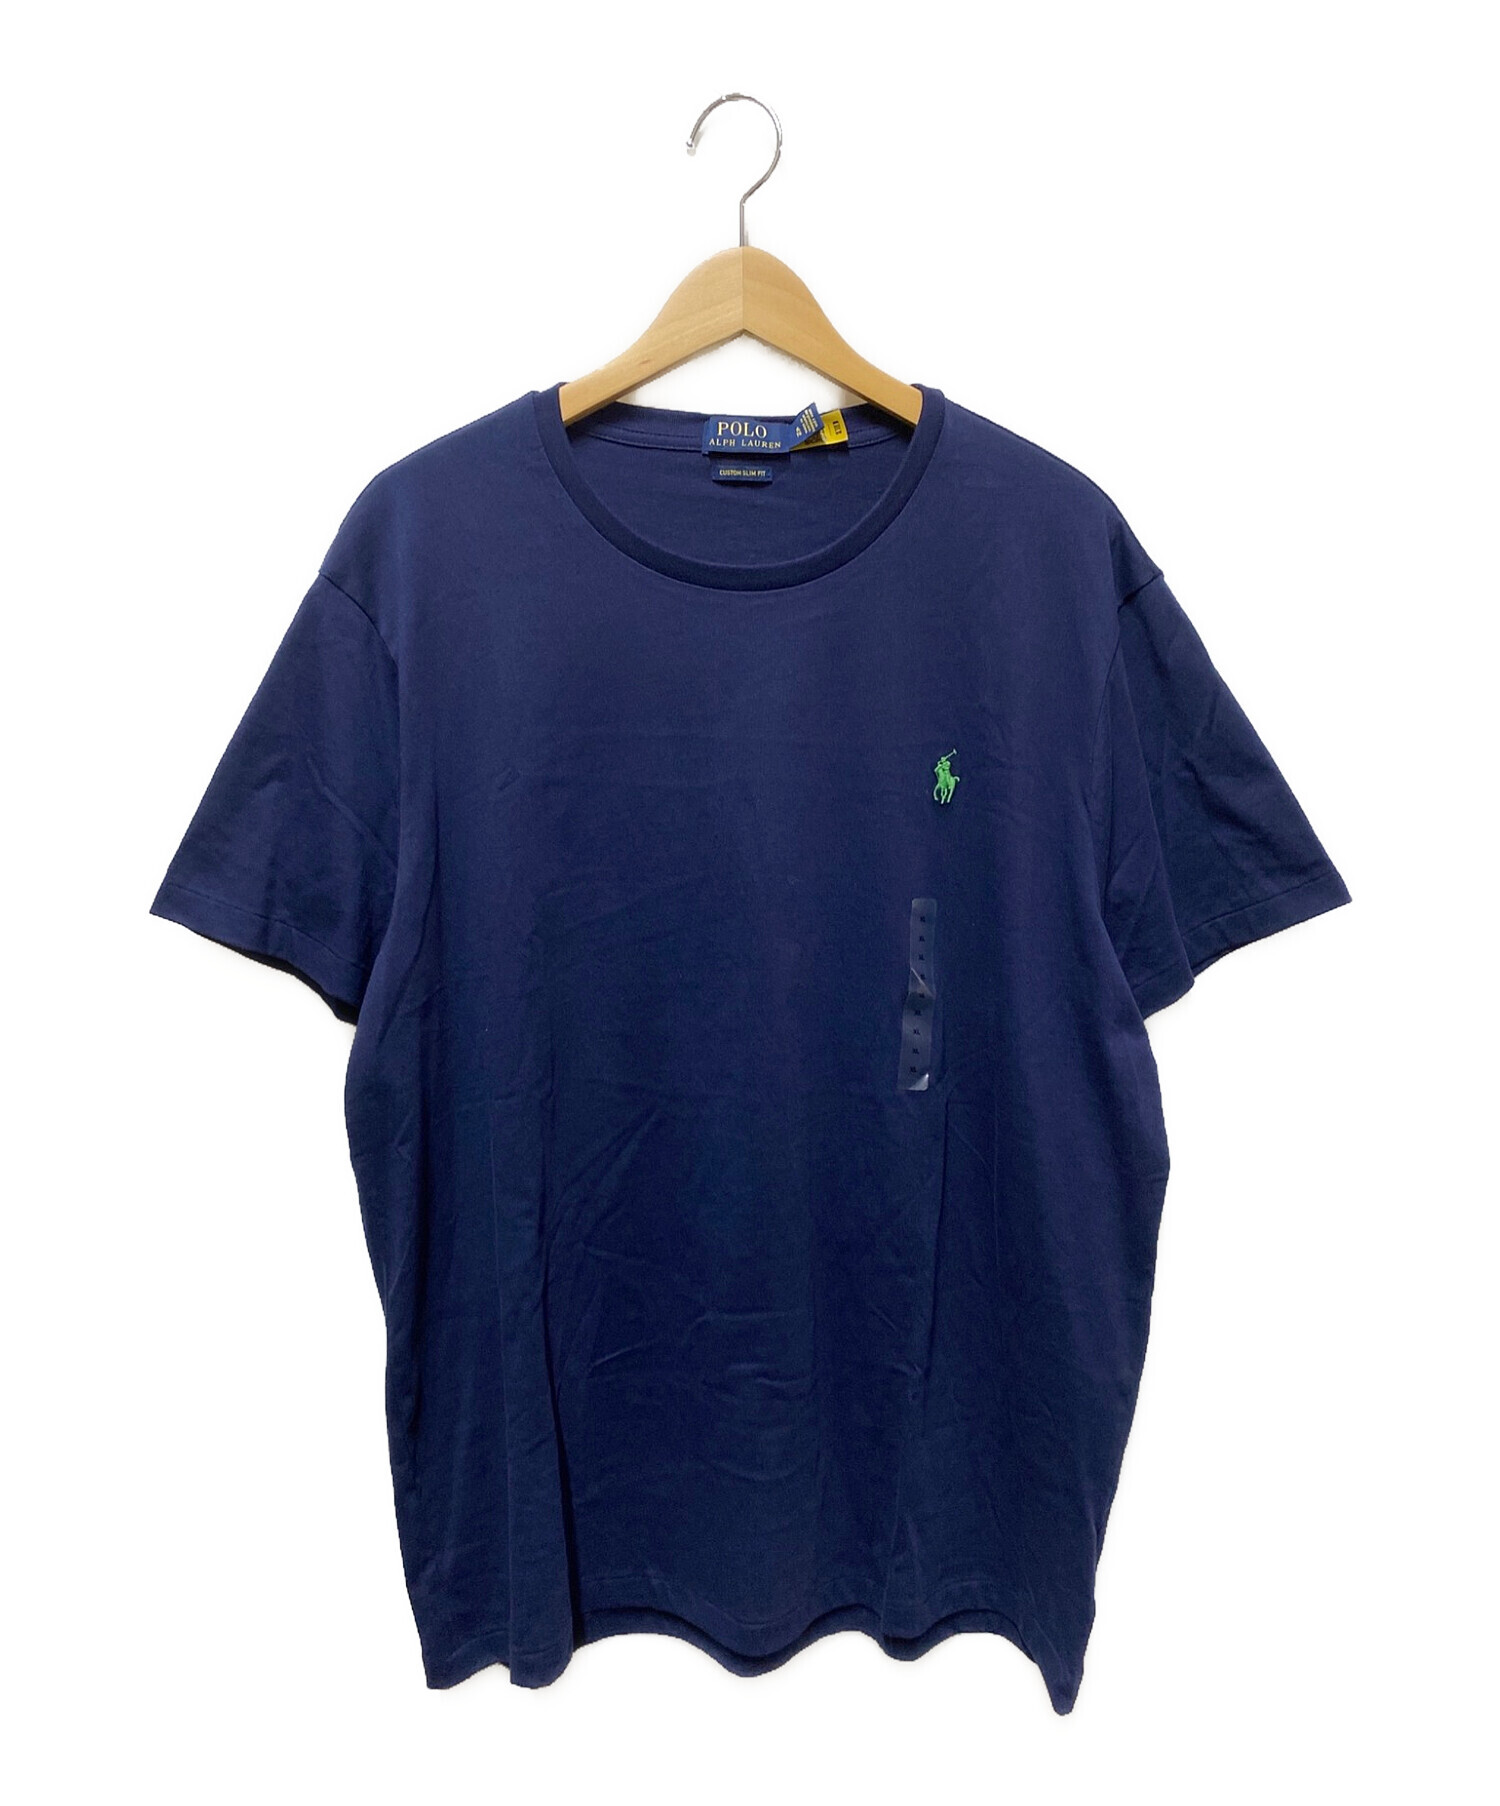 POLO RALPH LAUREN (ポロ・ラルフローレン) ワンポイントロゴTシャツ ネイビー サイズ:XL 未使用品